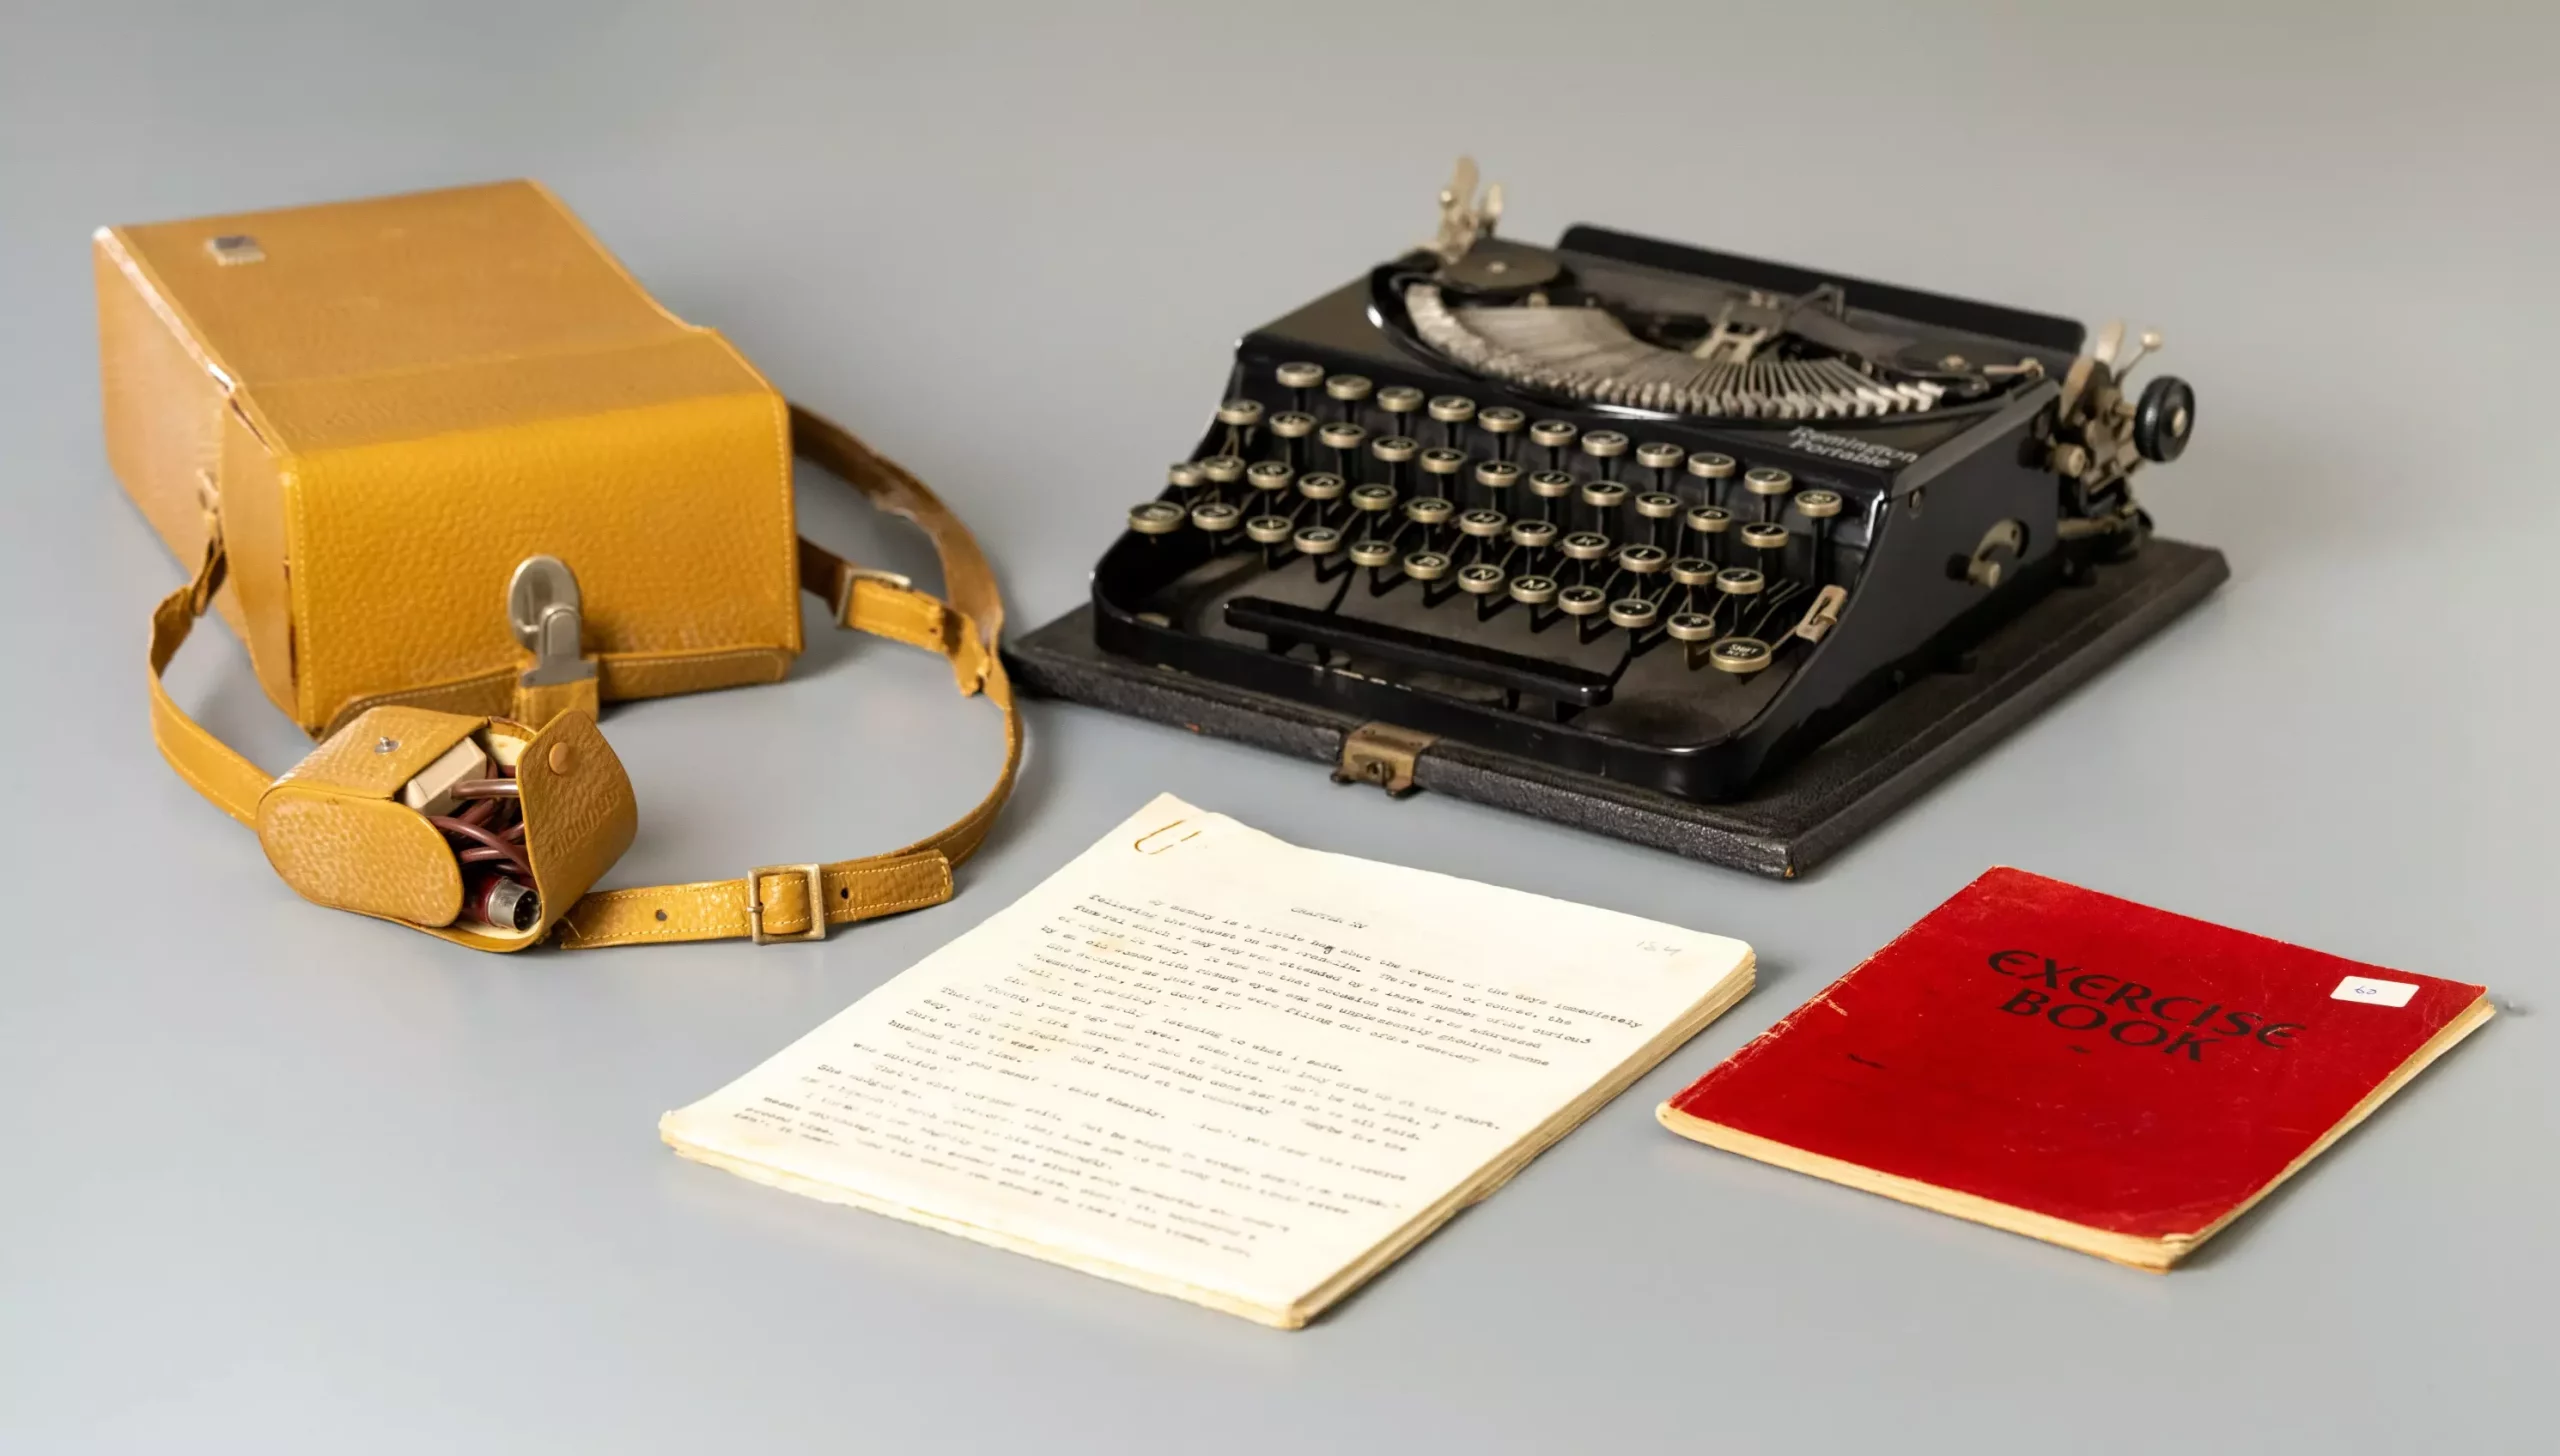 Η γραφομηχανή, το ντικταφόν και οι σημειώσεις της Άγκαθα Κρίστι